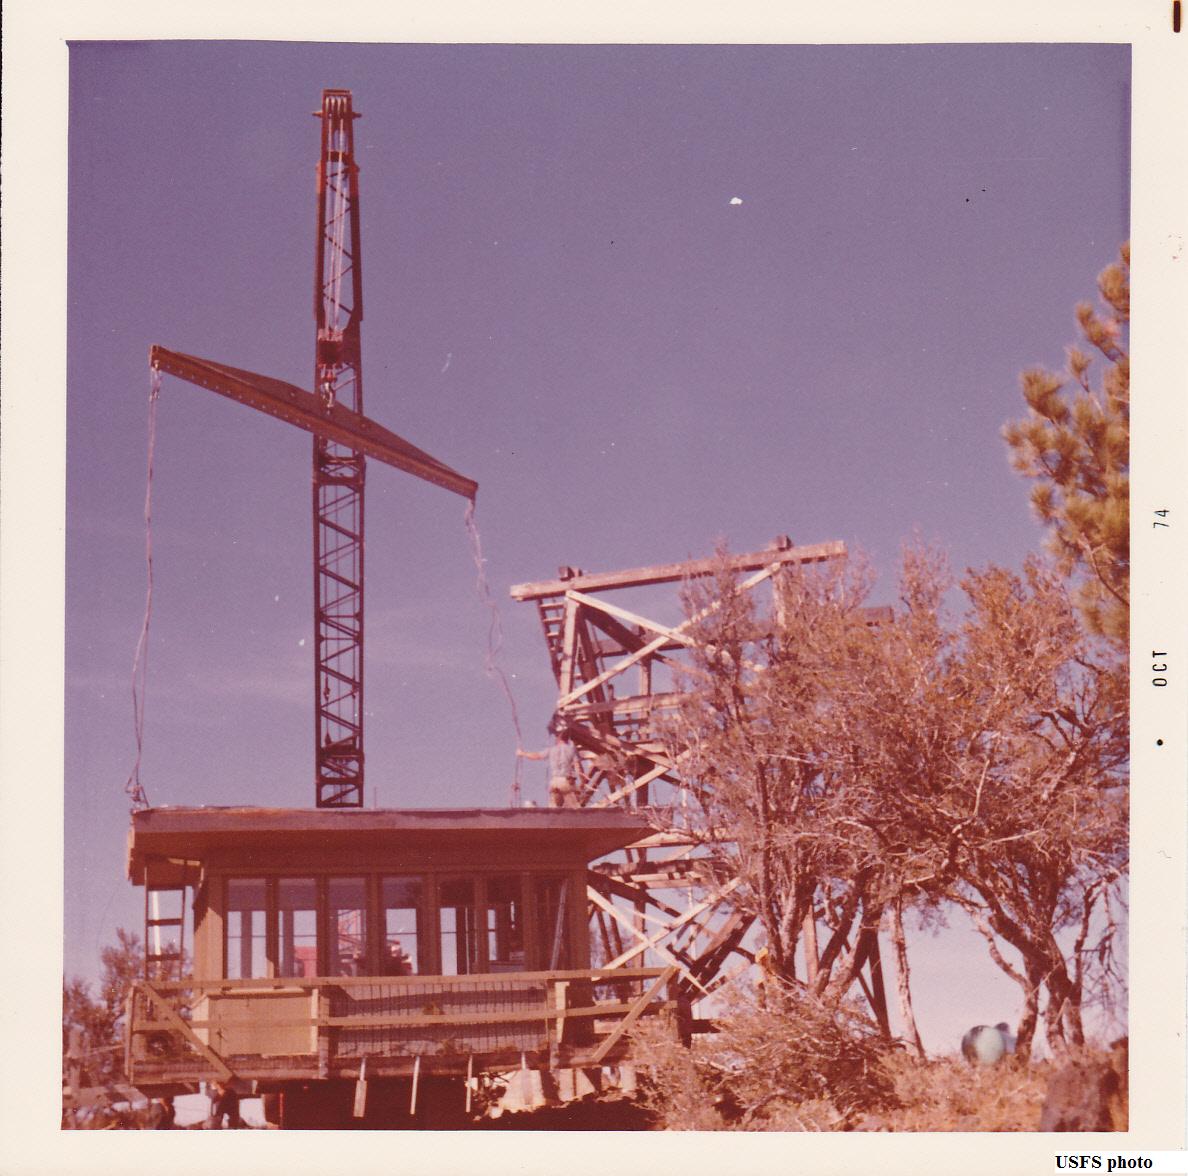 Antelope Mtn. in 1974